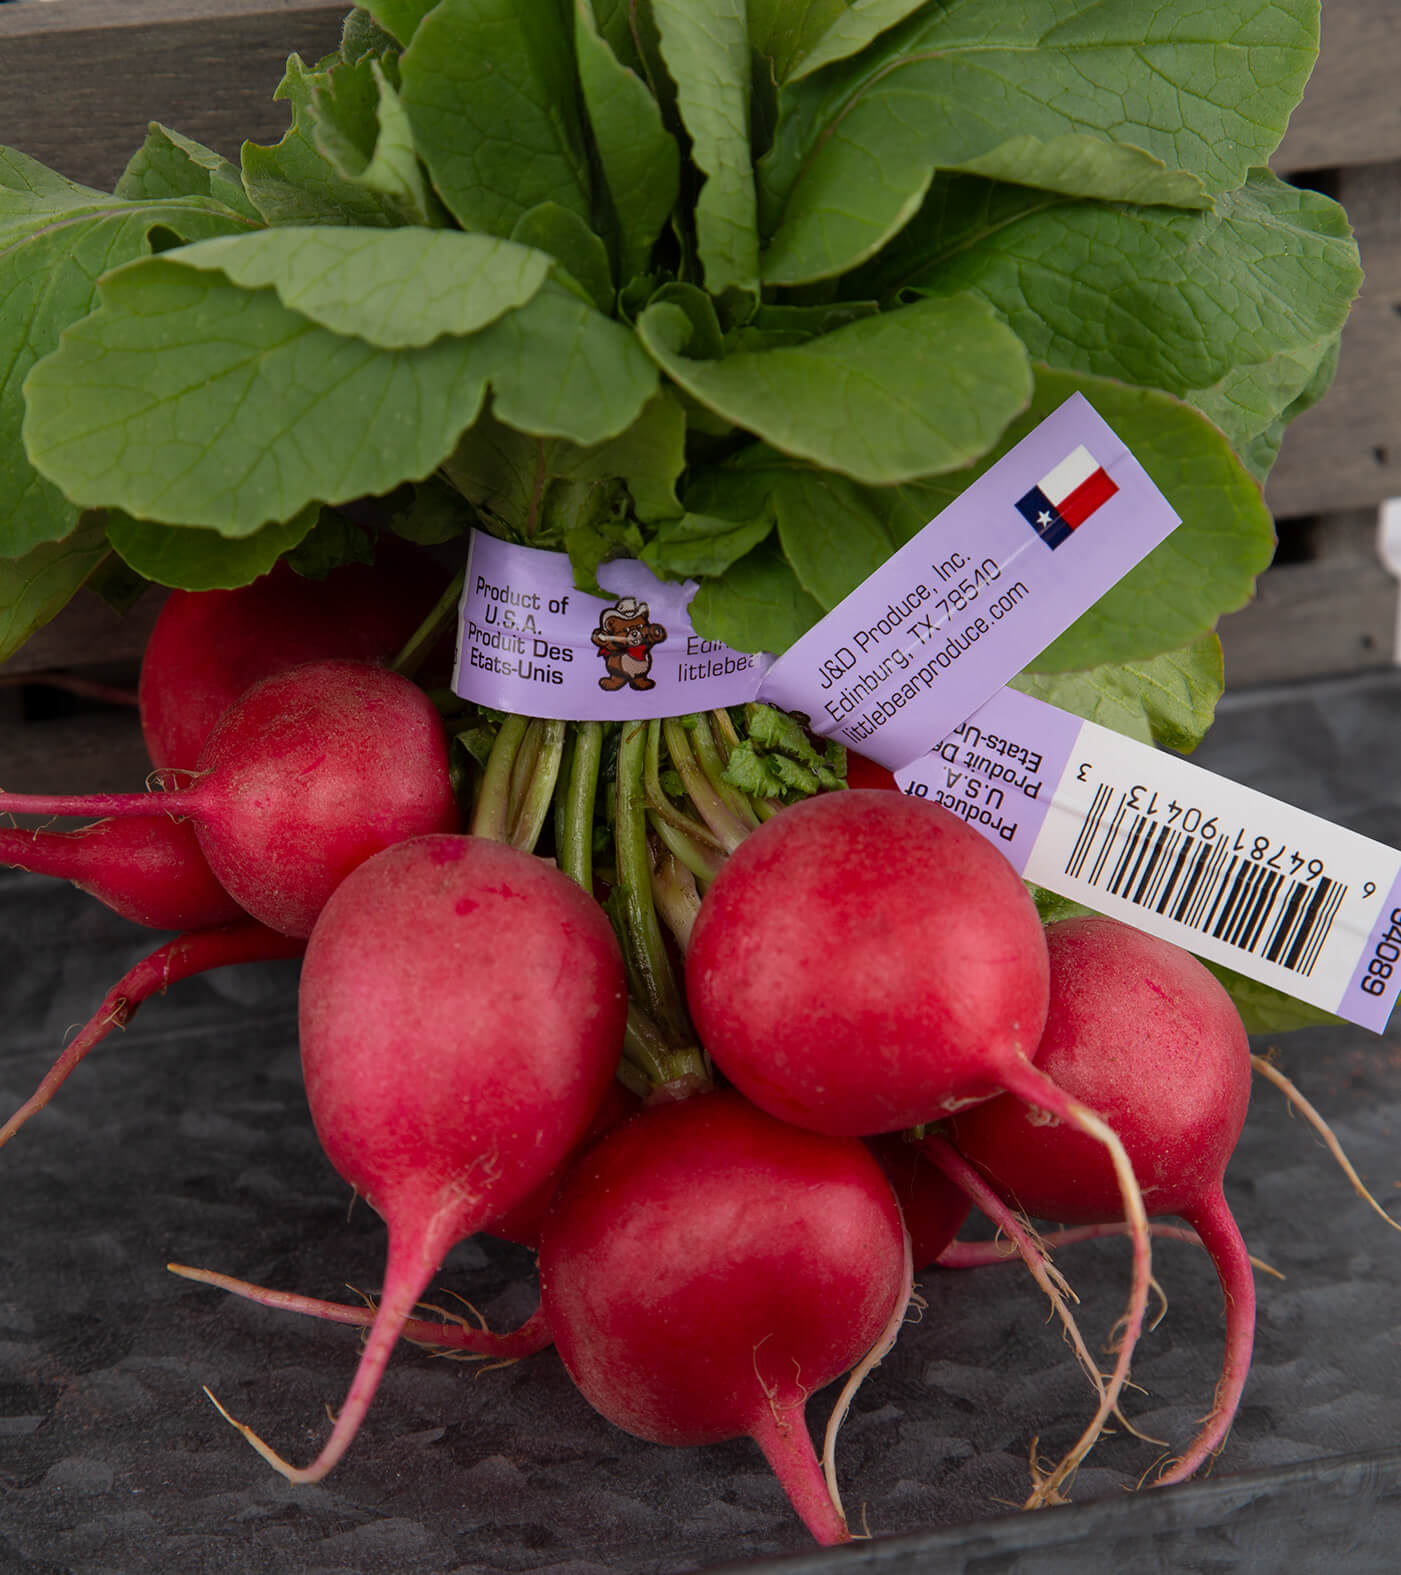 wire and plastic label twist tie around red radishes